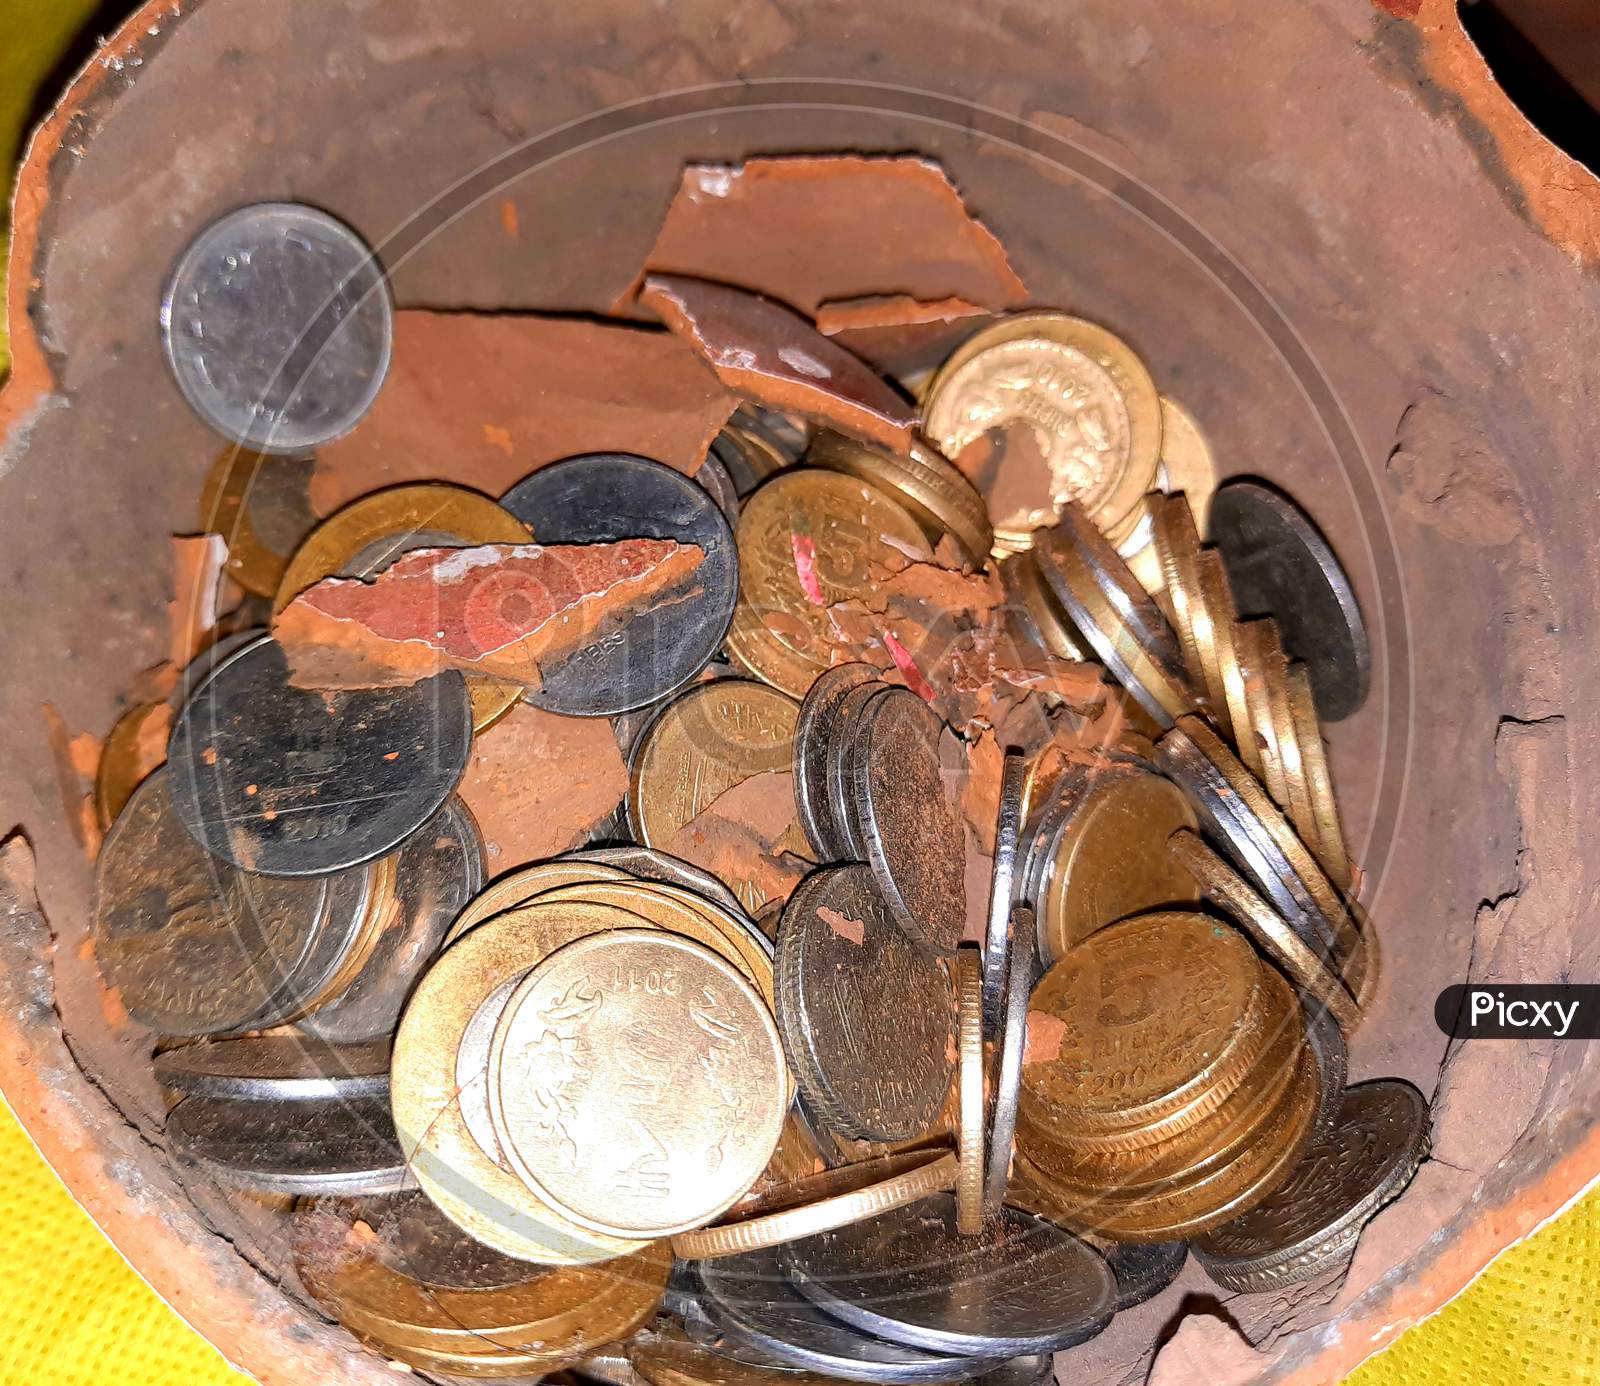 Coin inside Broken clay pot